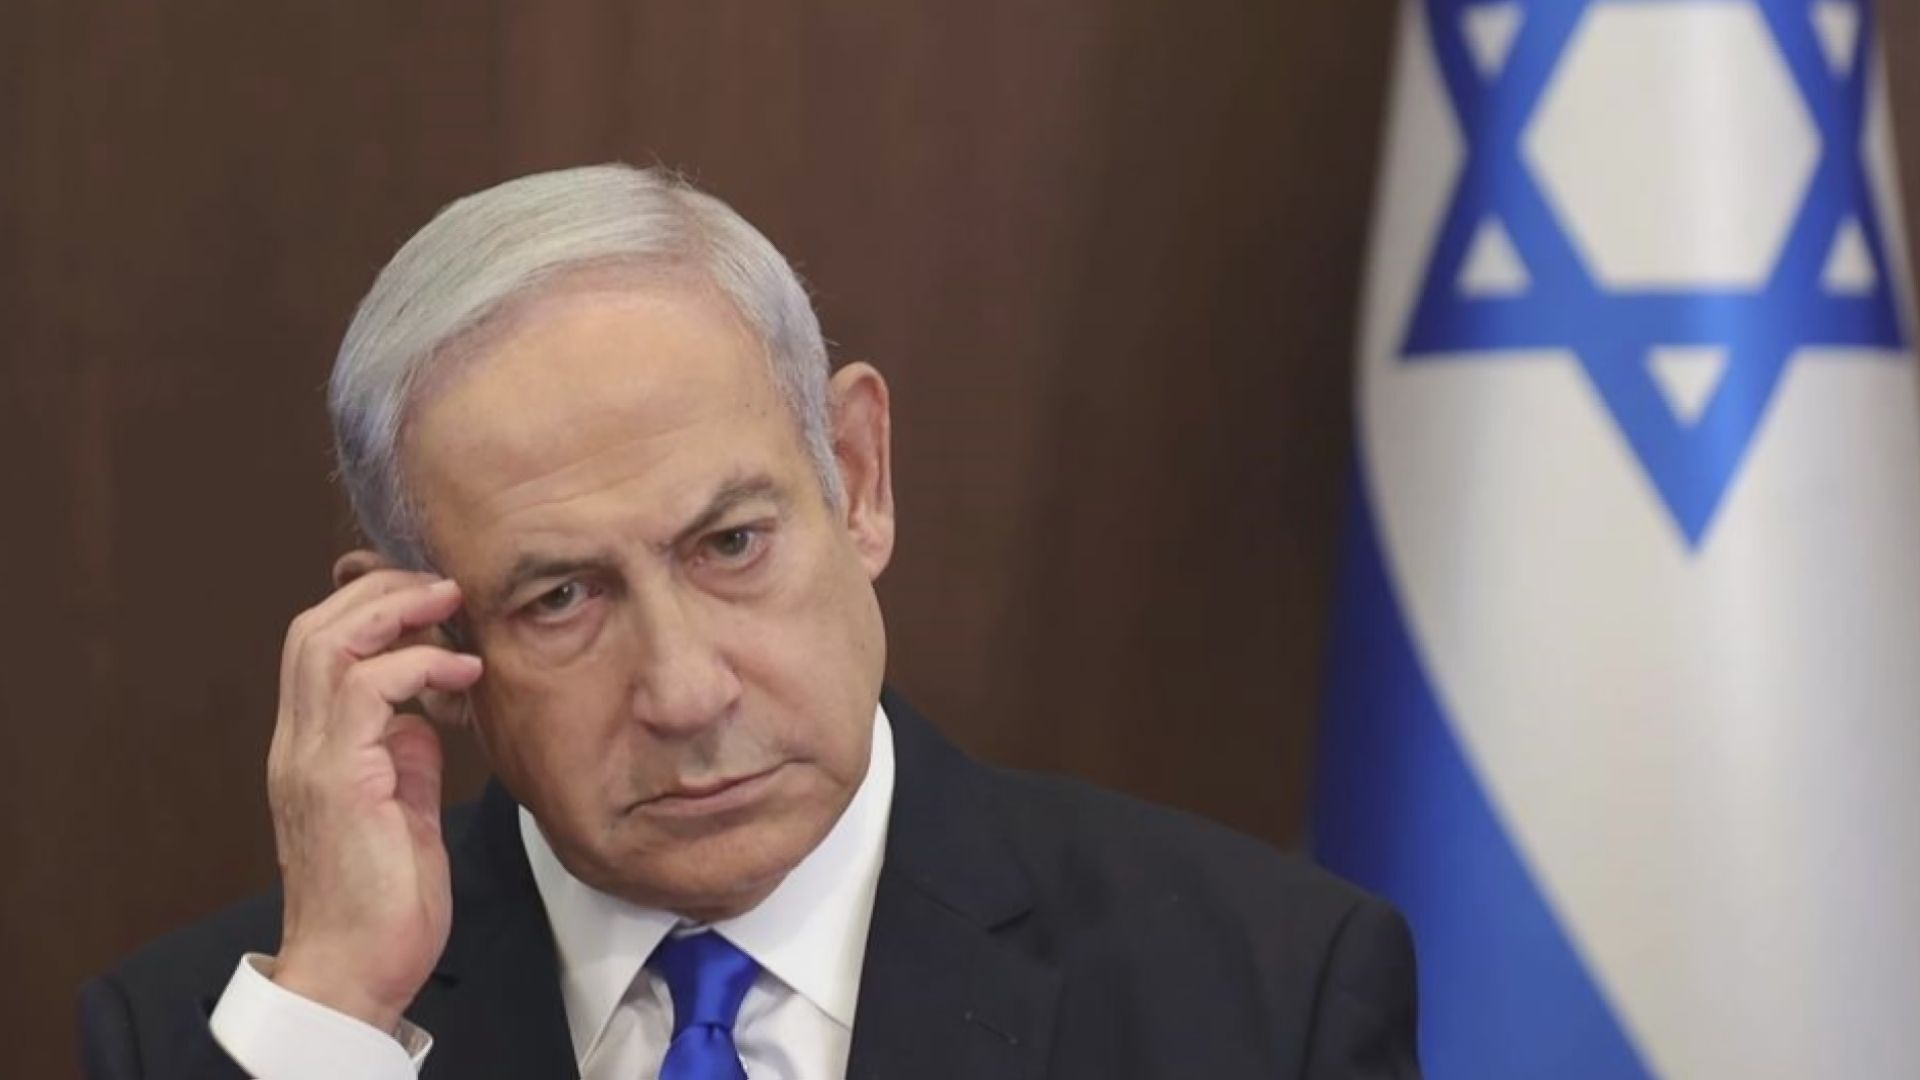 Netanyahu faces intensifying pressure at home as Gaza talks resume